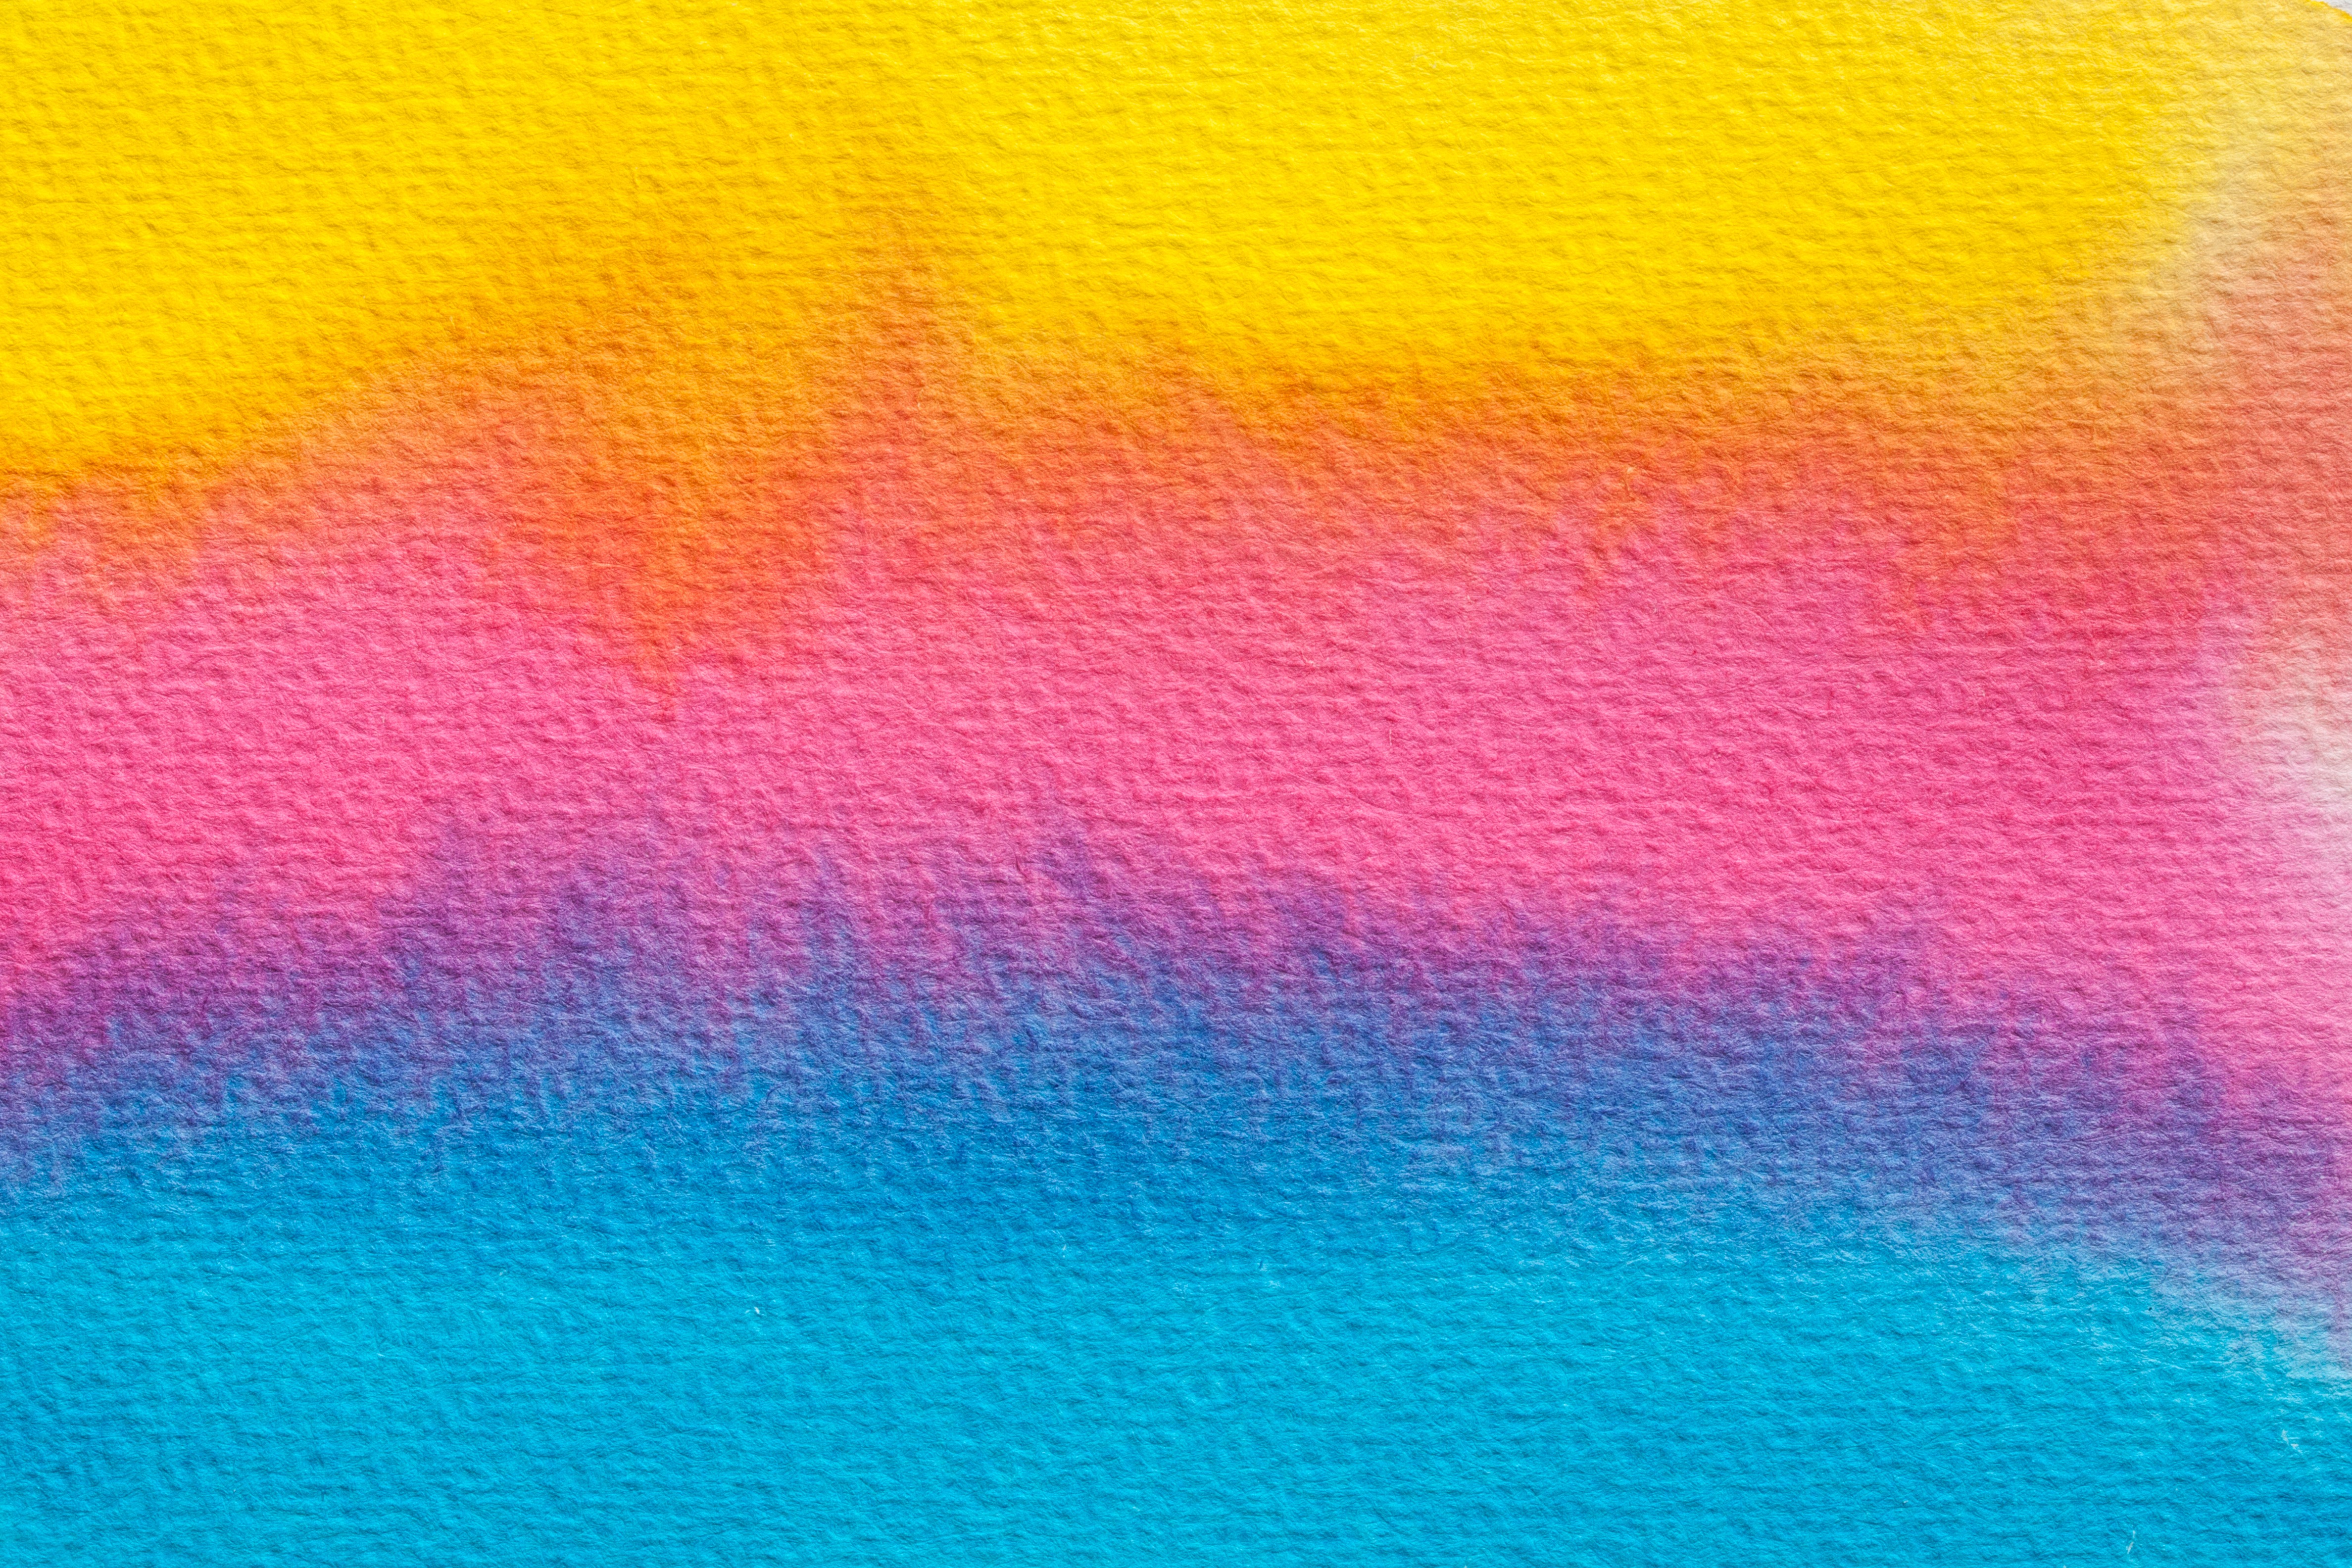 32k Wallpaper Multicolored watercolor, motley, textures, streaks